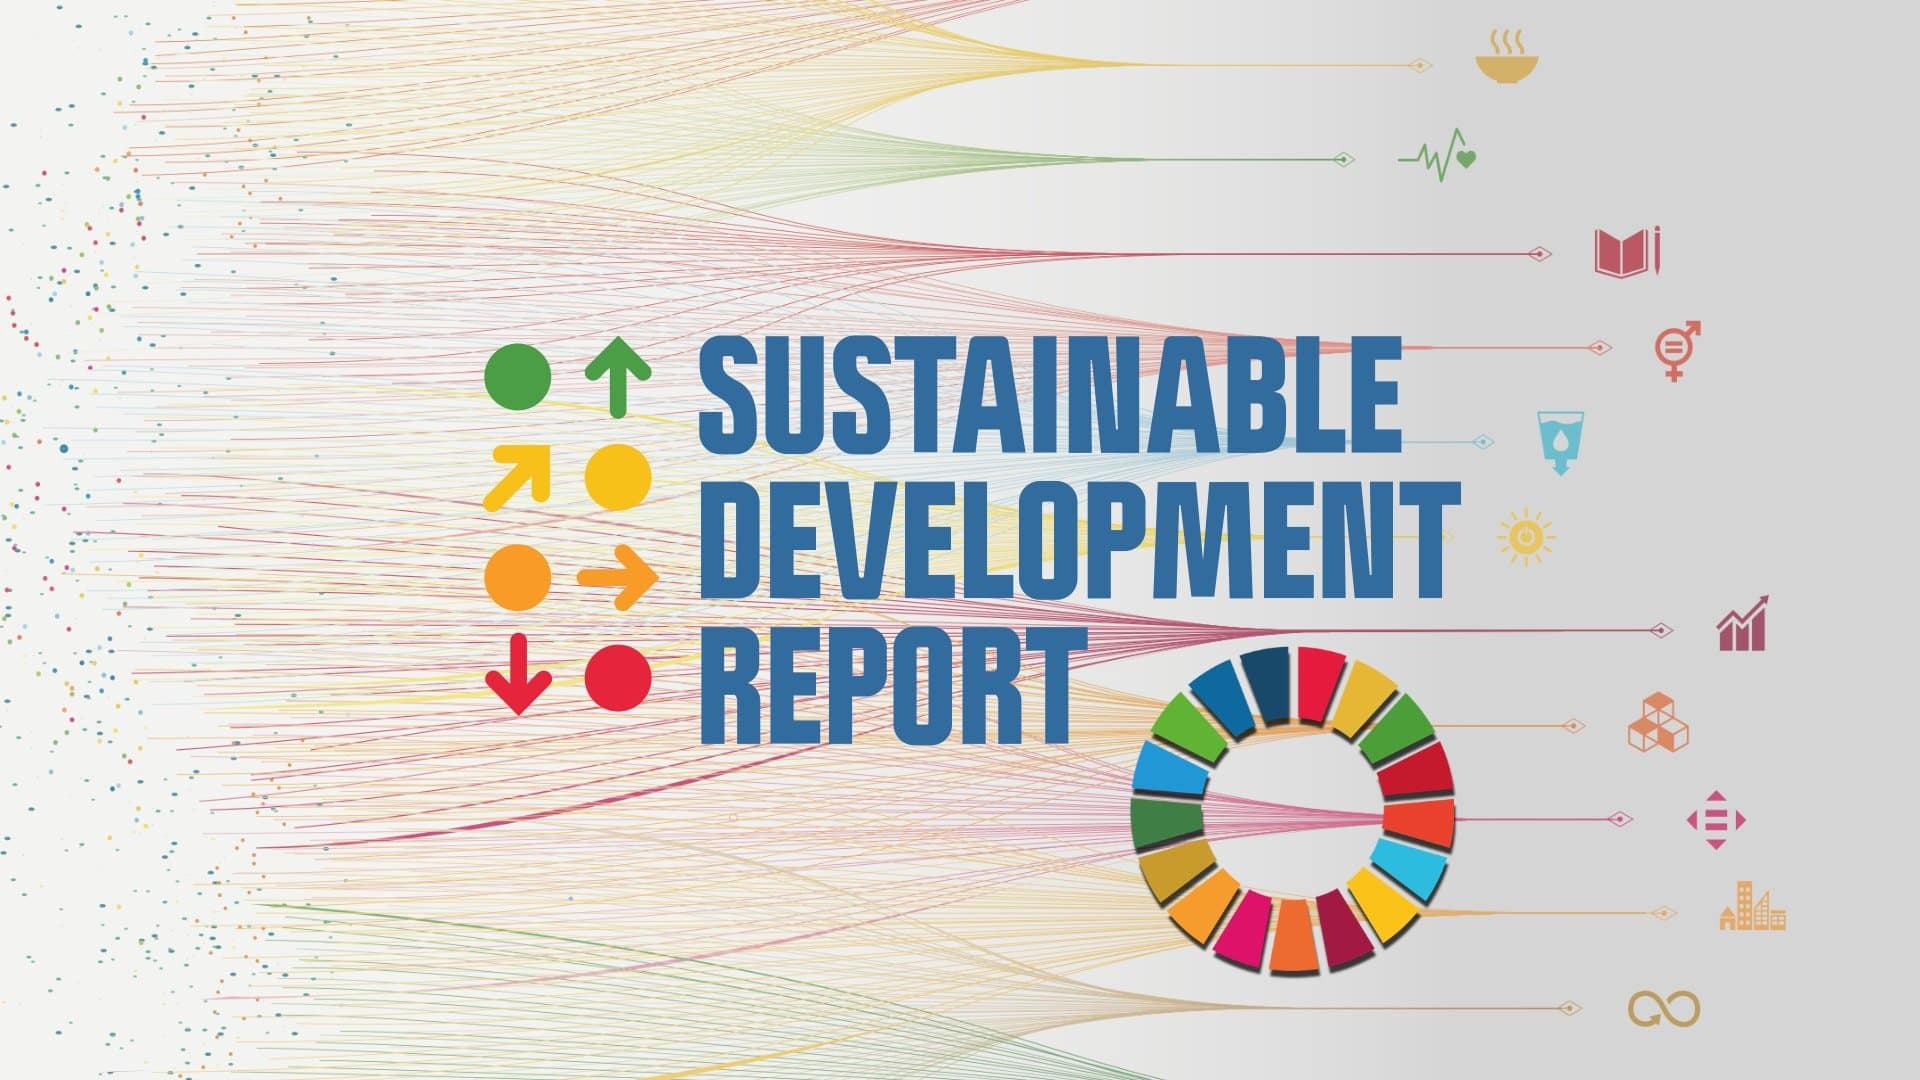 thefuture, Resurs, Sustainable Development Report